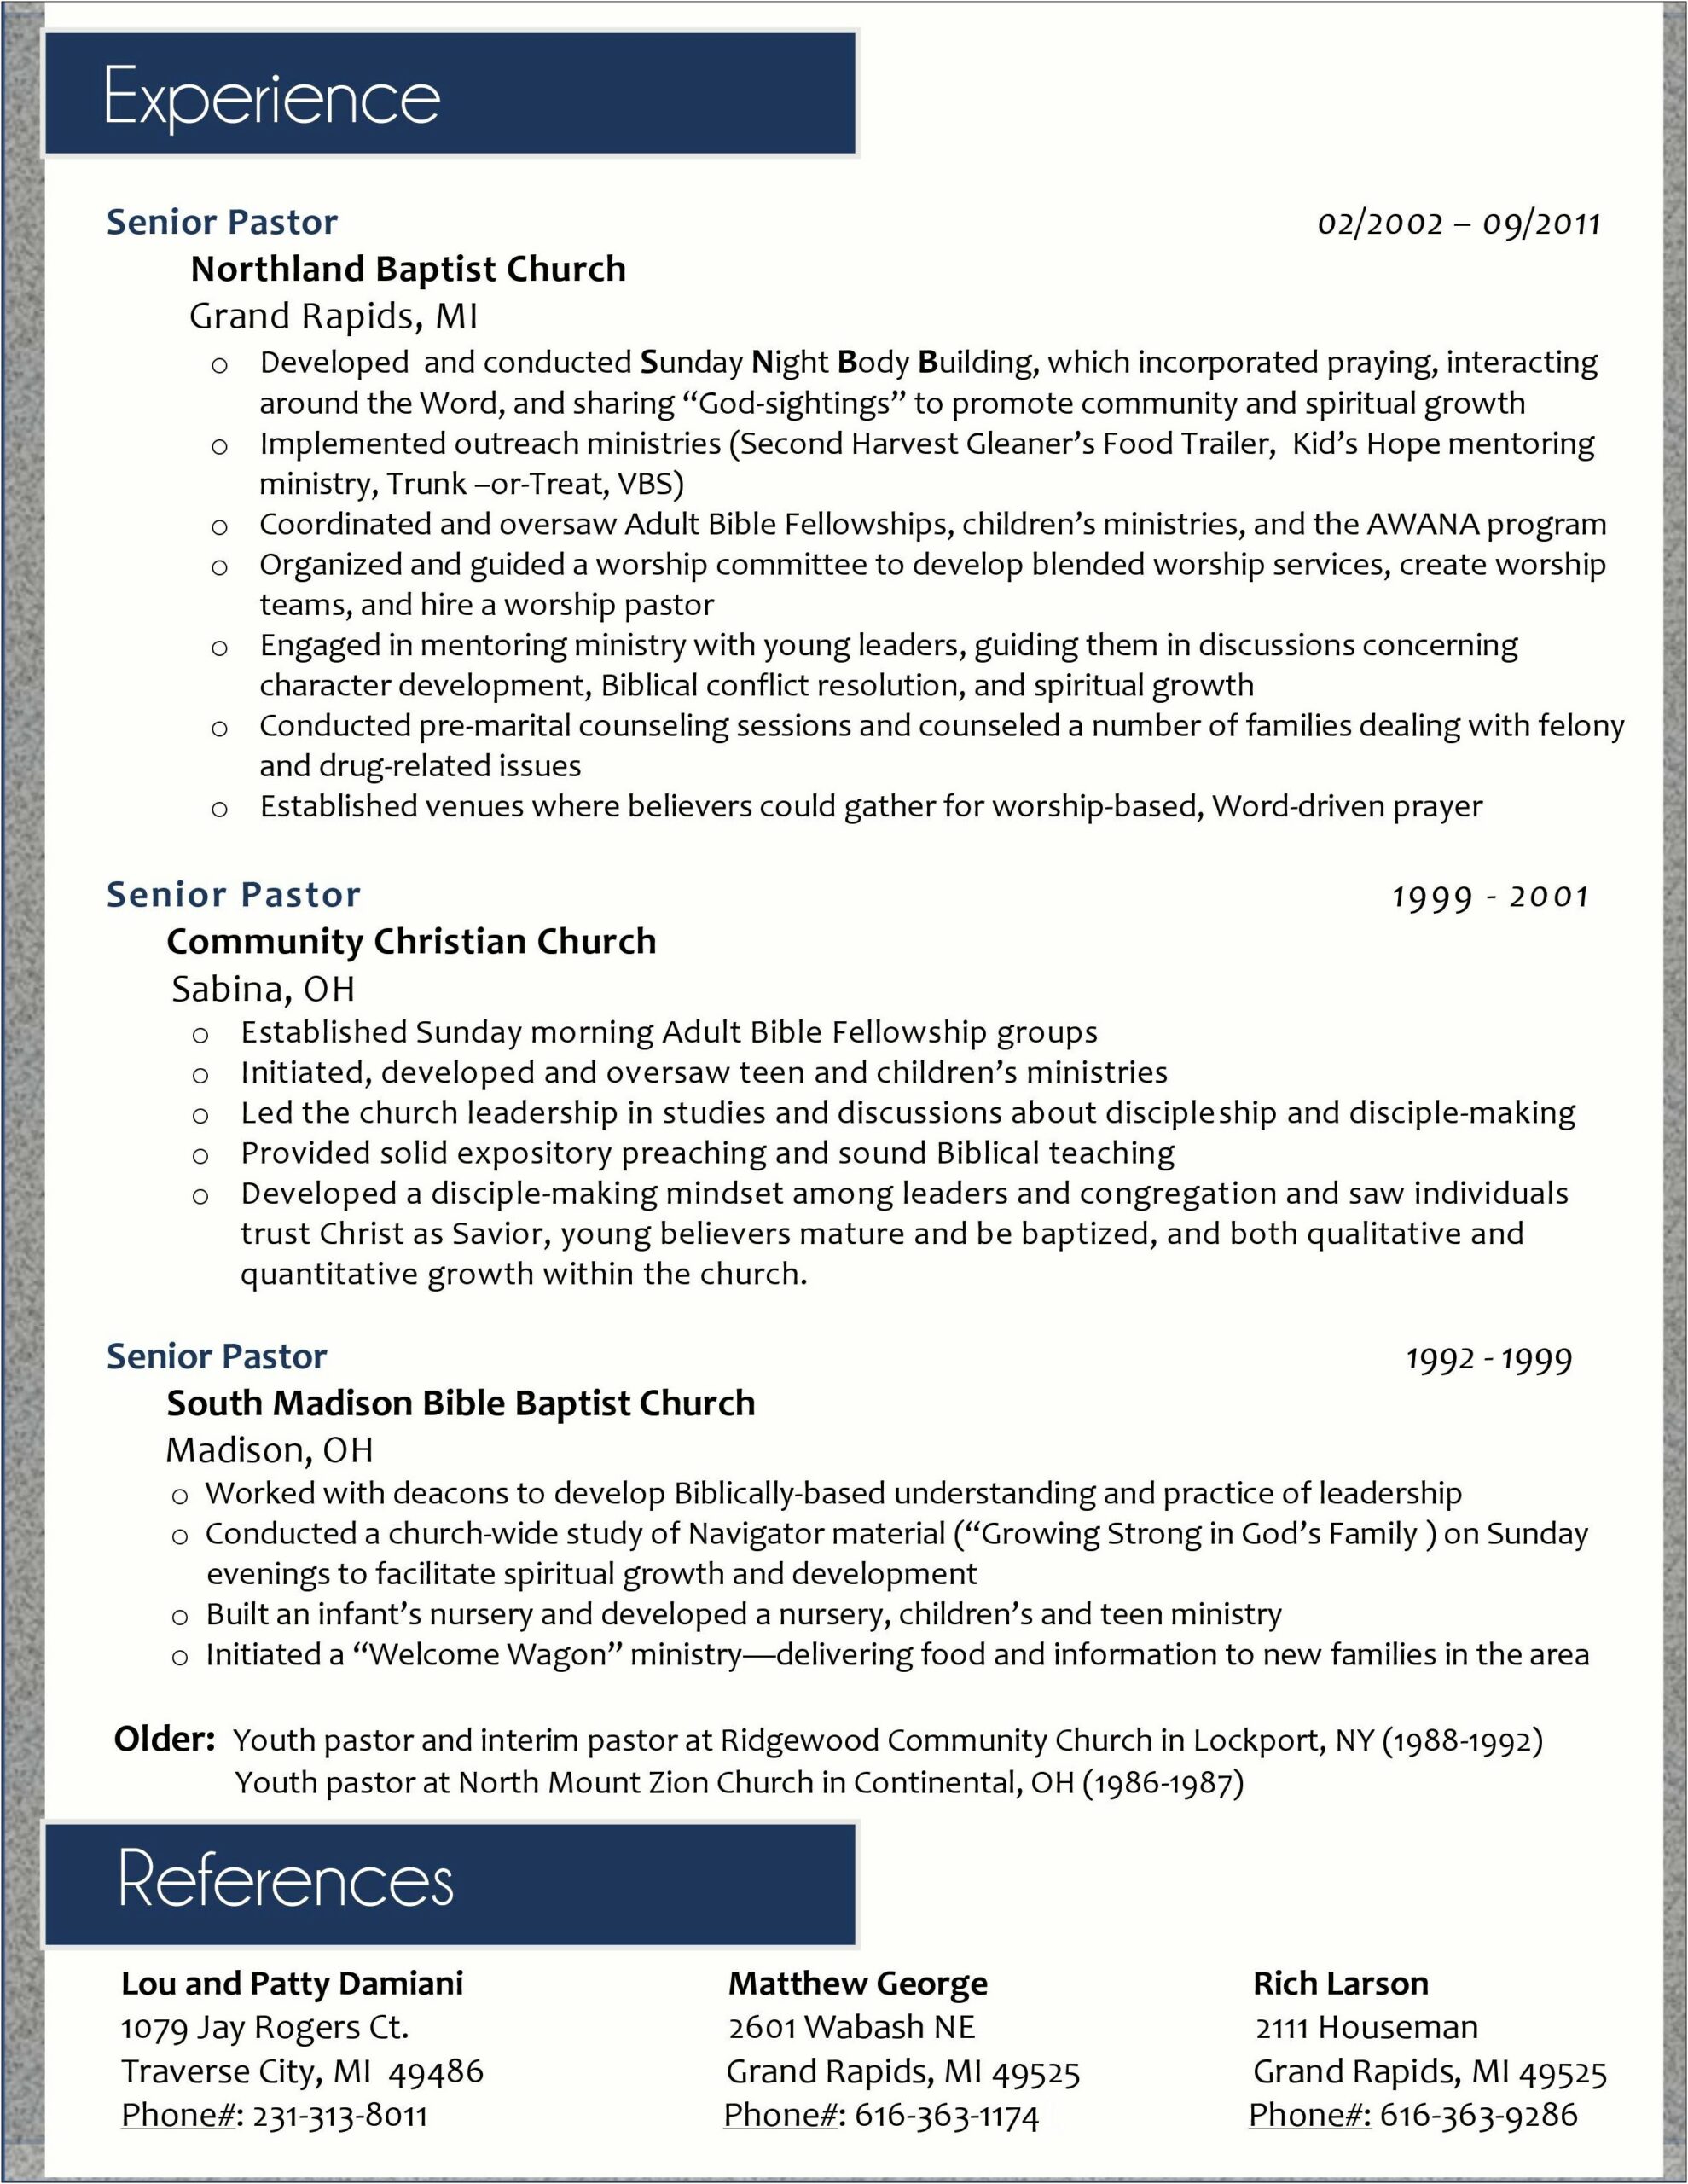 Sample Resume For A Senior Pastor